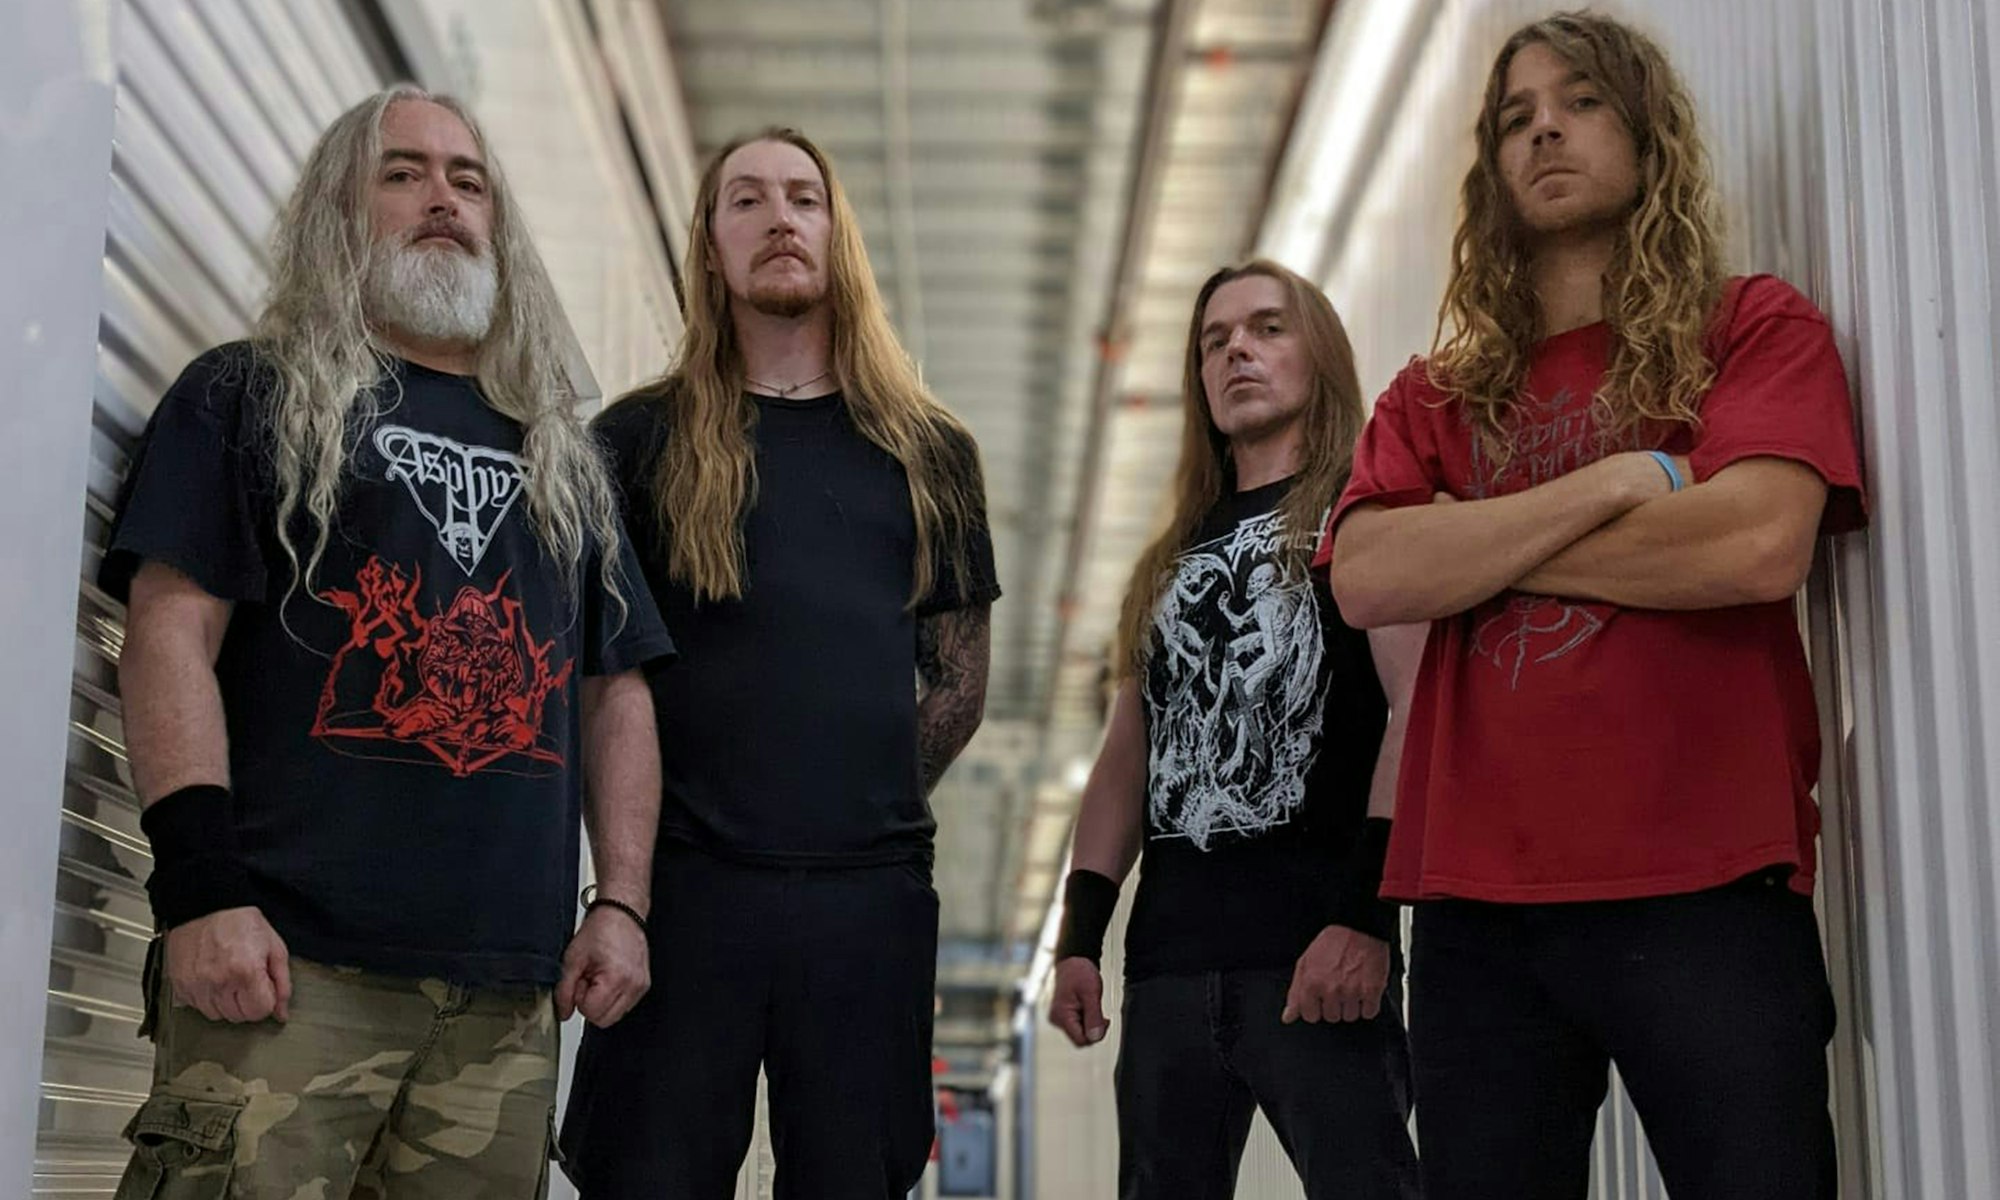 INCANTATION – la leggenda del death metal americano dal vivo al Centrale Rock di Erba domenica 11 agosto